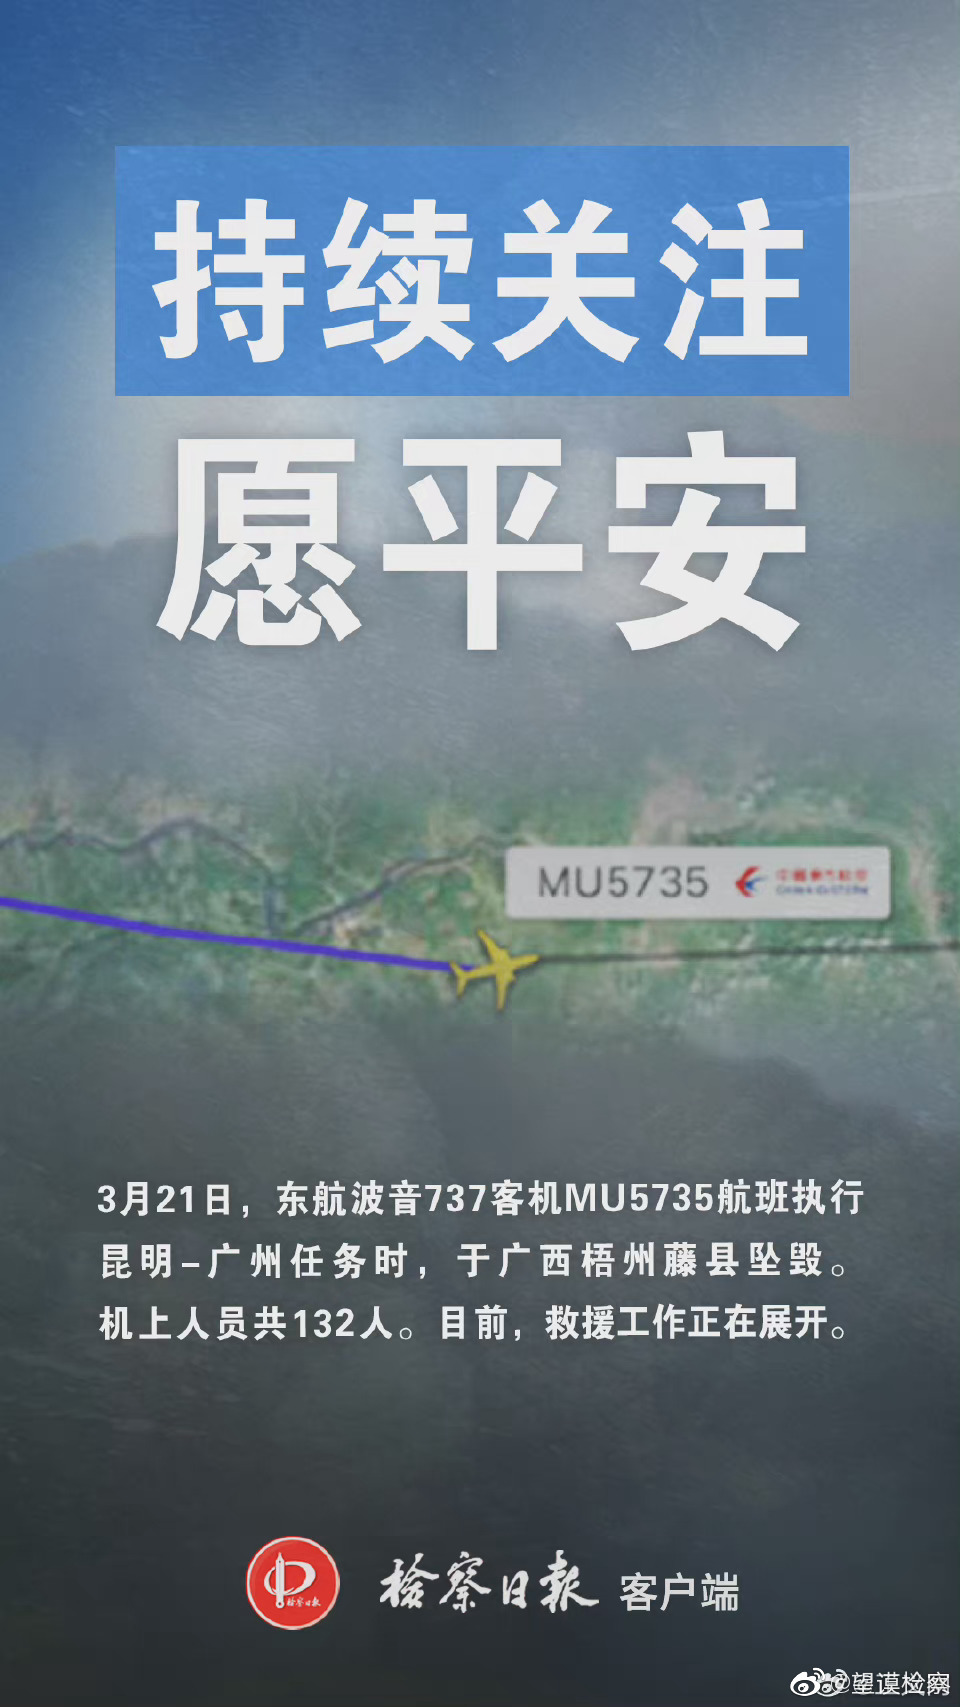 mu5735夜间救援视频 MU5735救援最新情况汇总